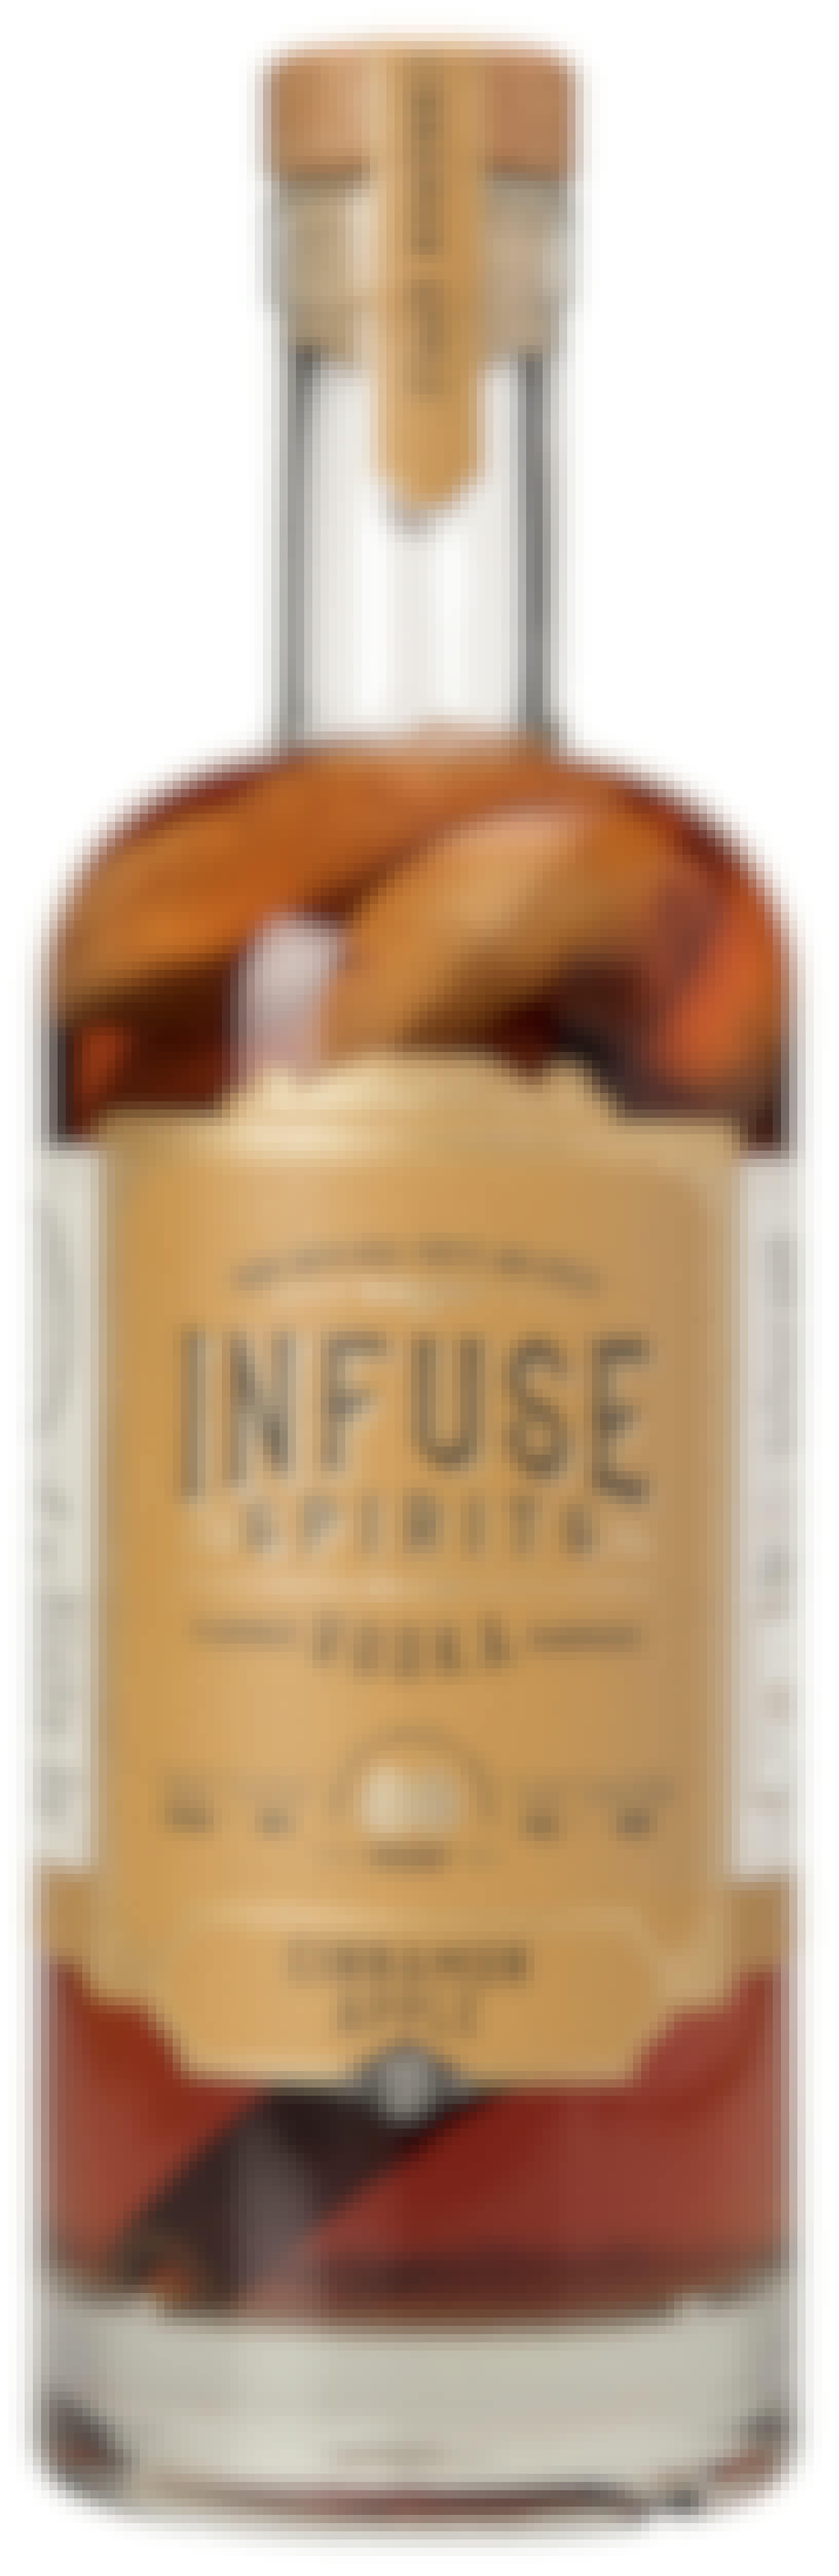 Infuse Spirits Cinnamon Apple Vodka 750ml